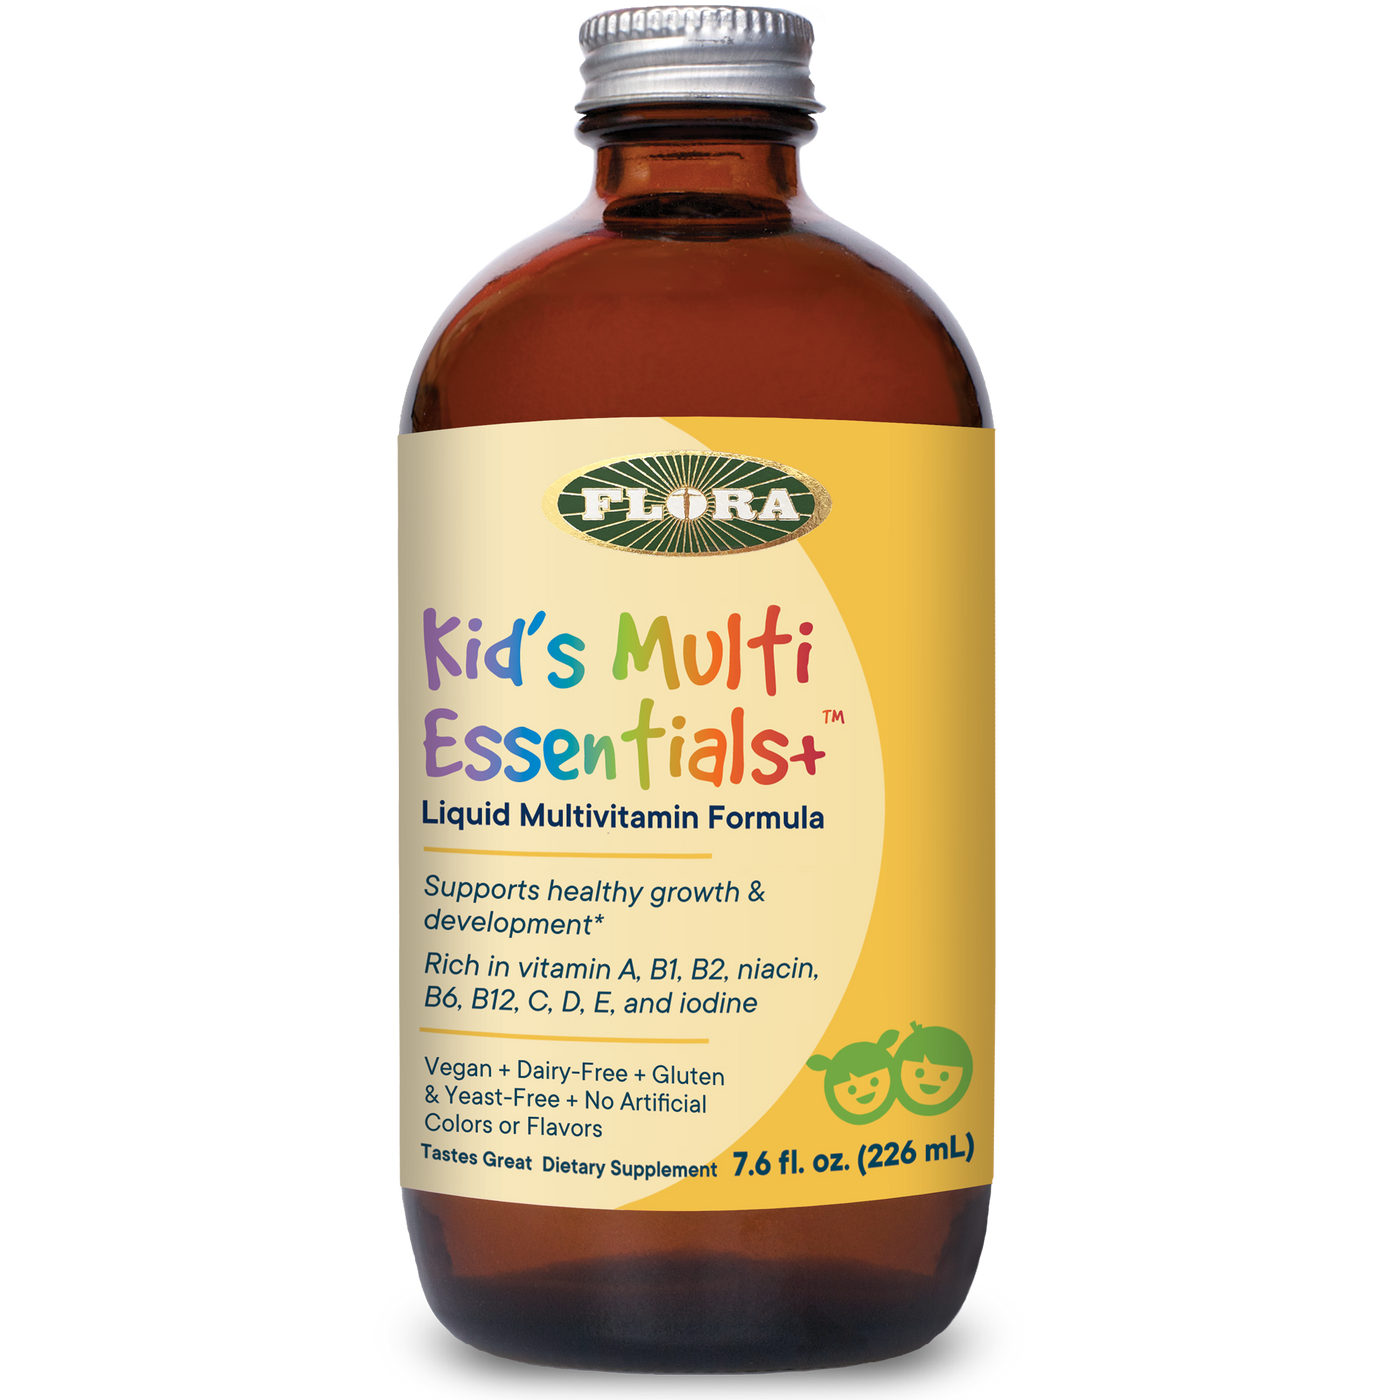 Kid's Multi Essentials+ 7.6 fl oz Curated Wellness